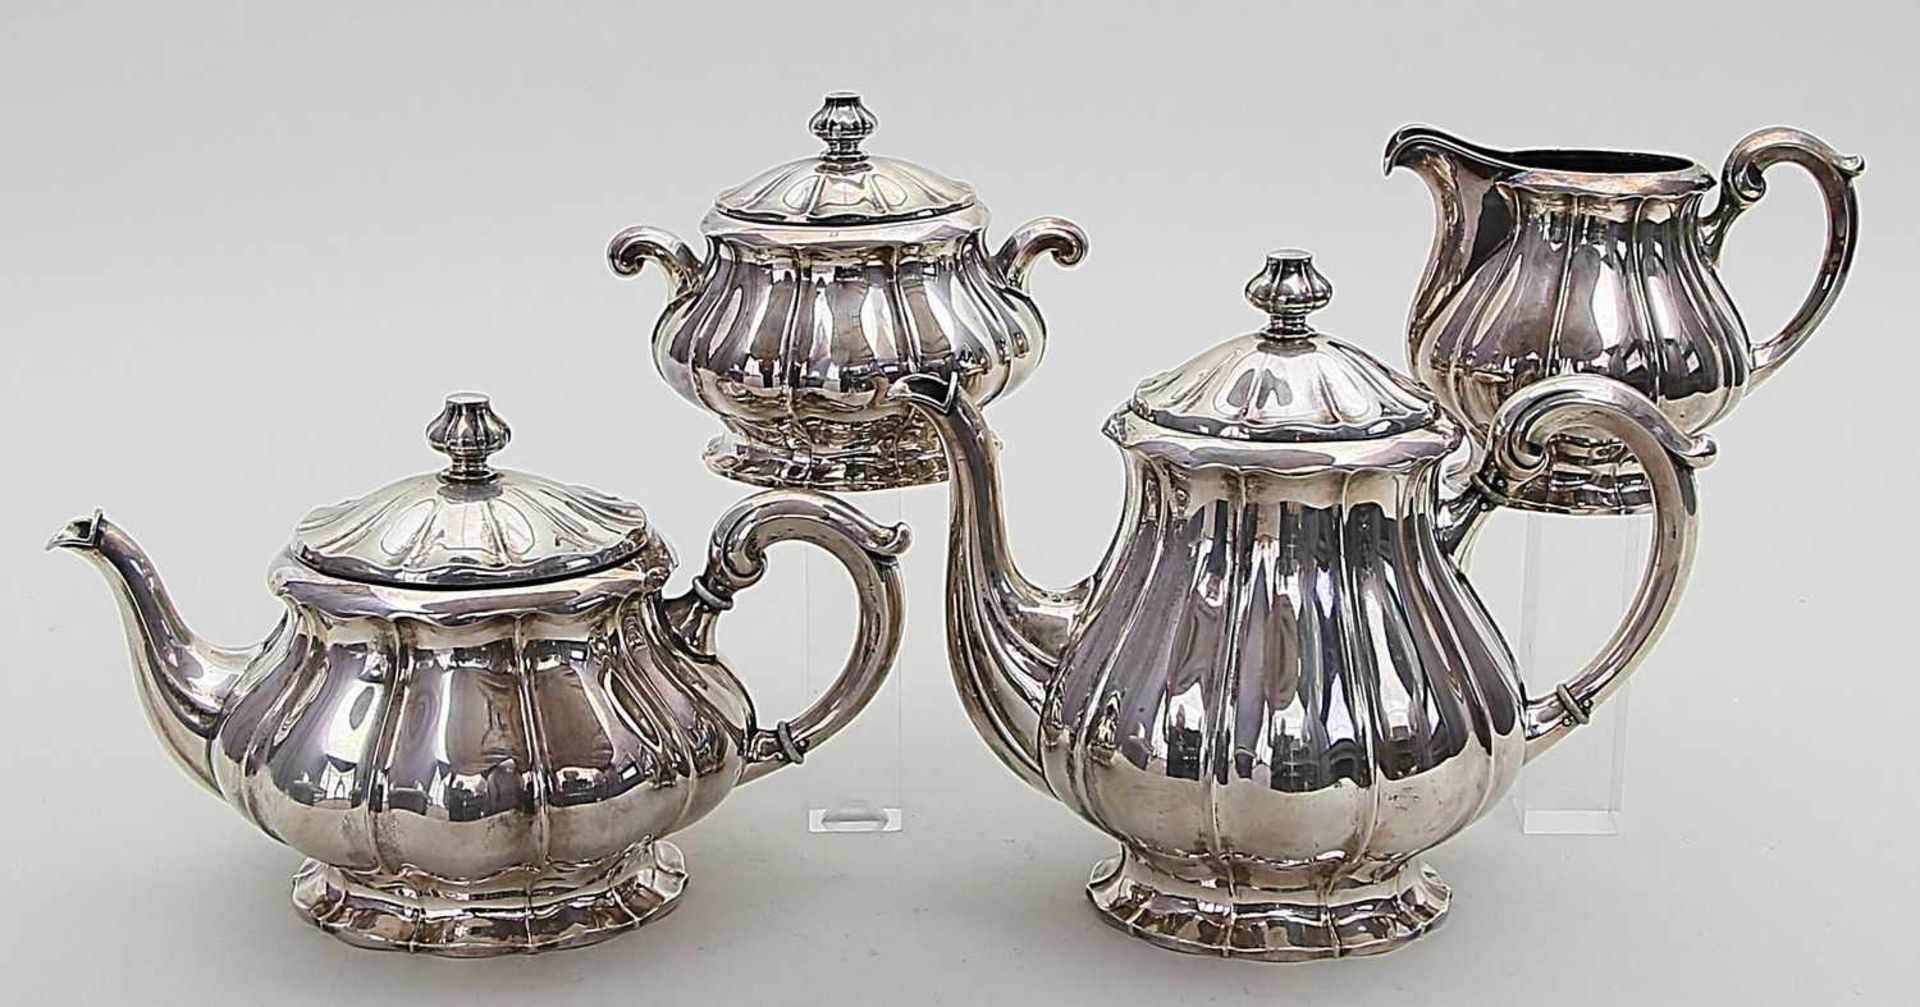 Kaffee- und Teekernstück.800/000 Silber, 1.563 g. Birnförmig gebauchte, godronierte Wandung, auf